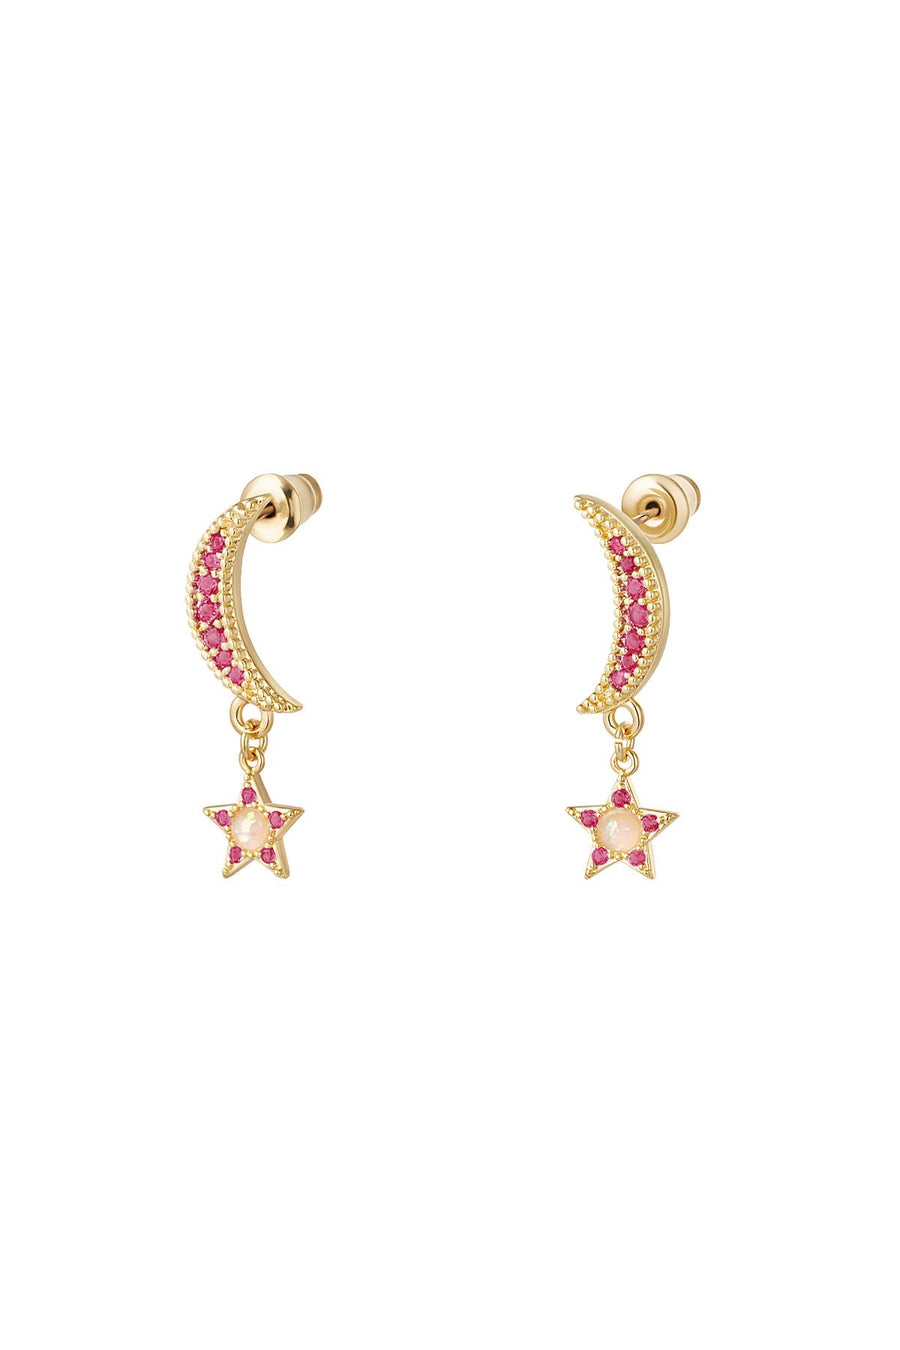 Opal Half Moon Stud Earrings - Gold